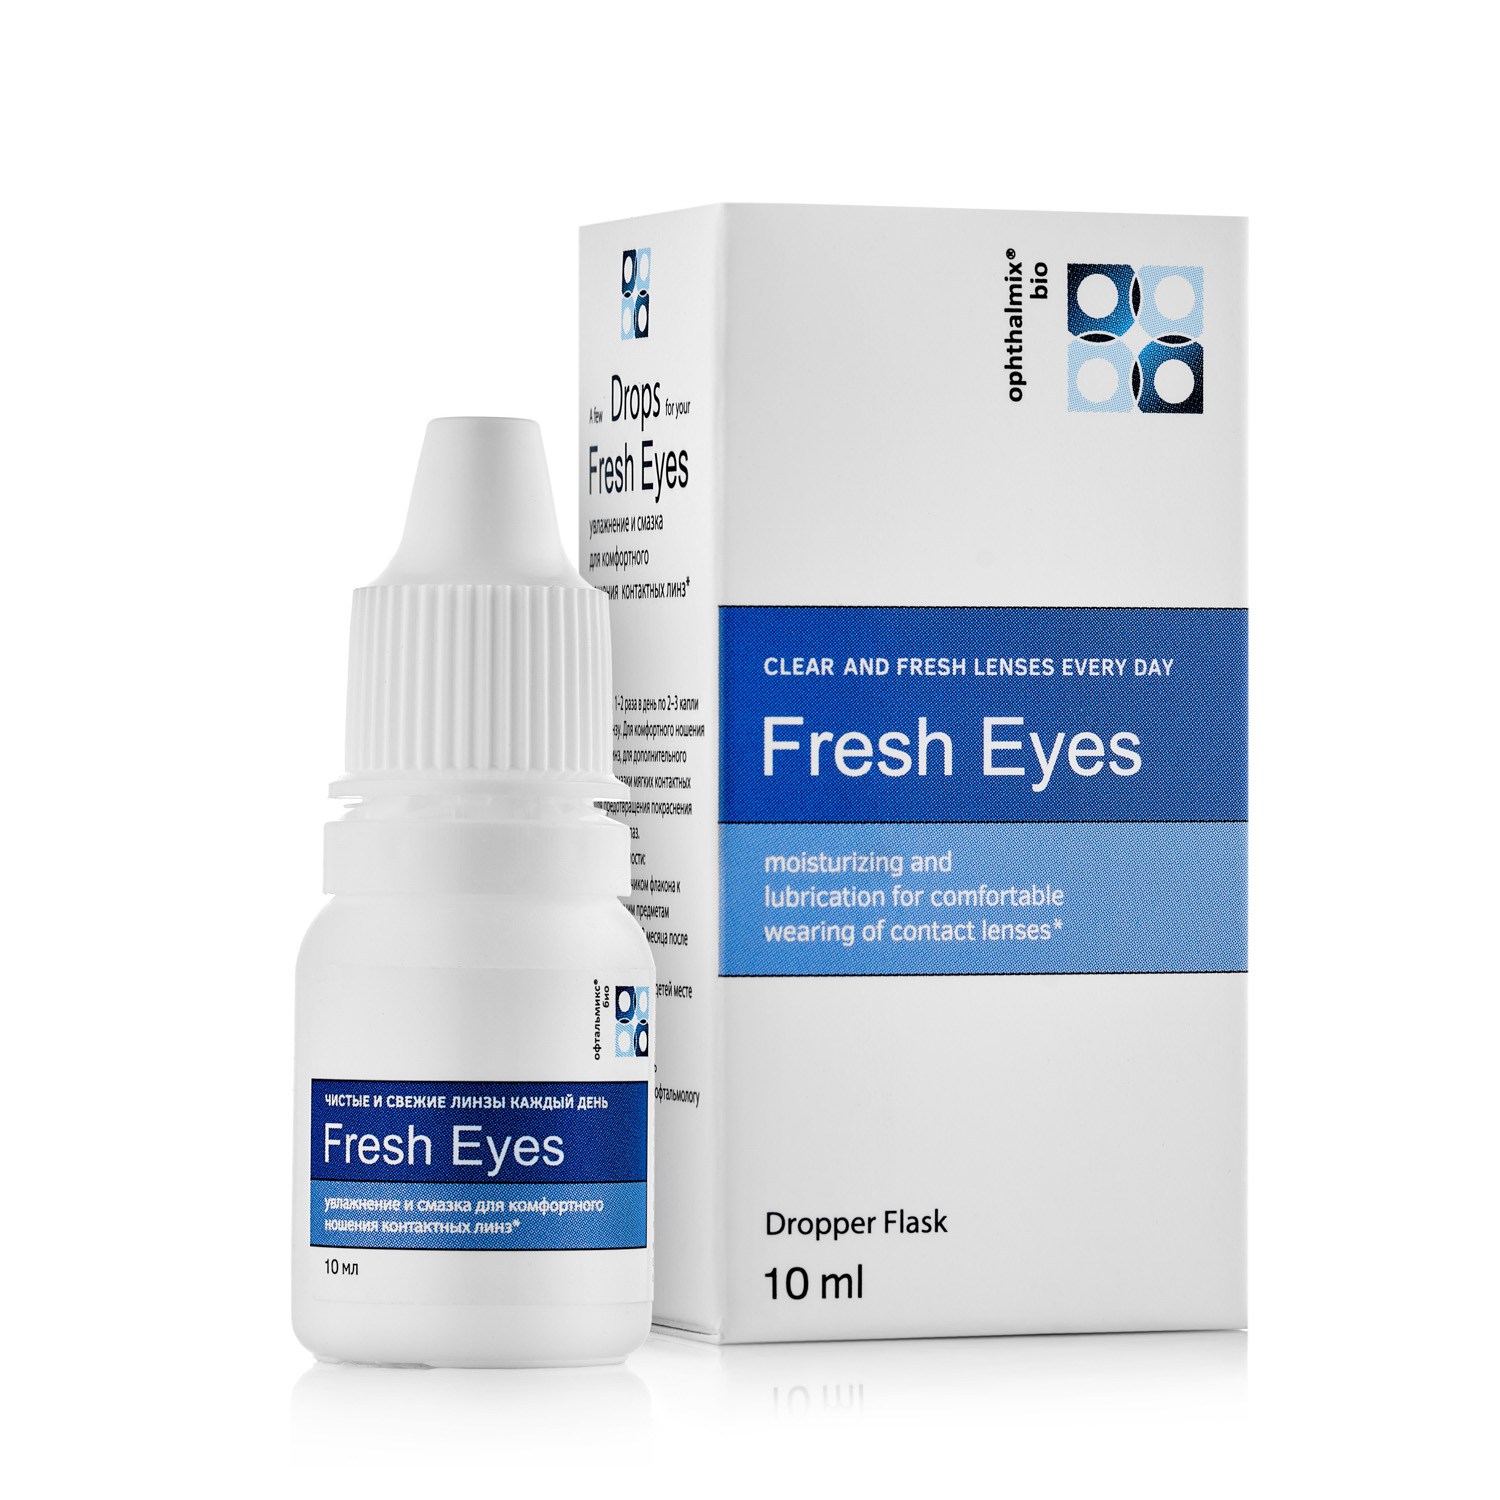 Голубые капли око. Капли Офтальмикс био Fresh Eye. Увлажняющие капли для глаз 10 мл. Капли для контактных линз увлажняющие Fresh. Глазные капли для увлажнения глаз с гиалуроновой кислотой.